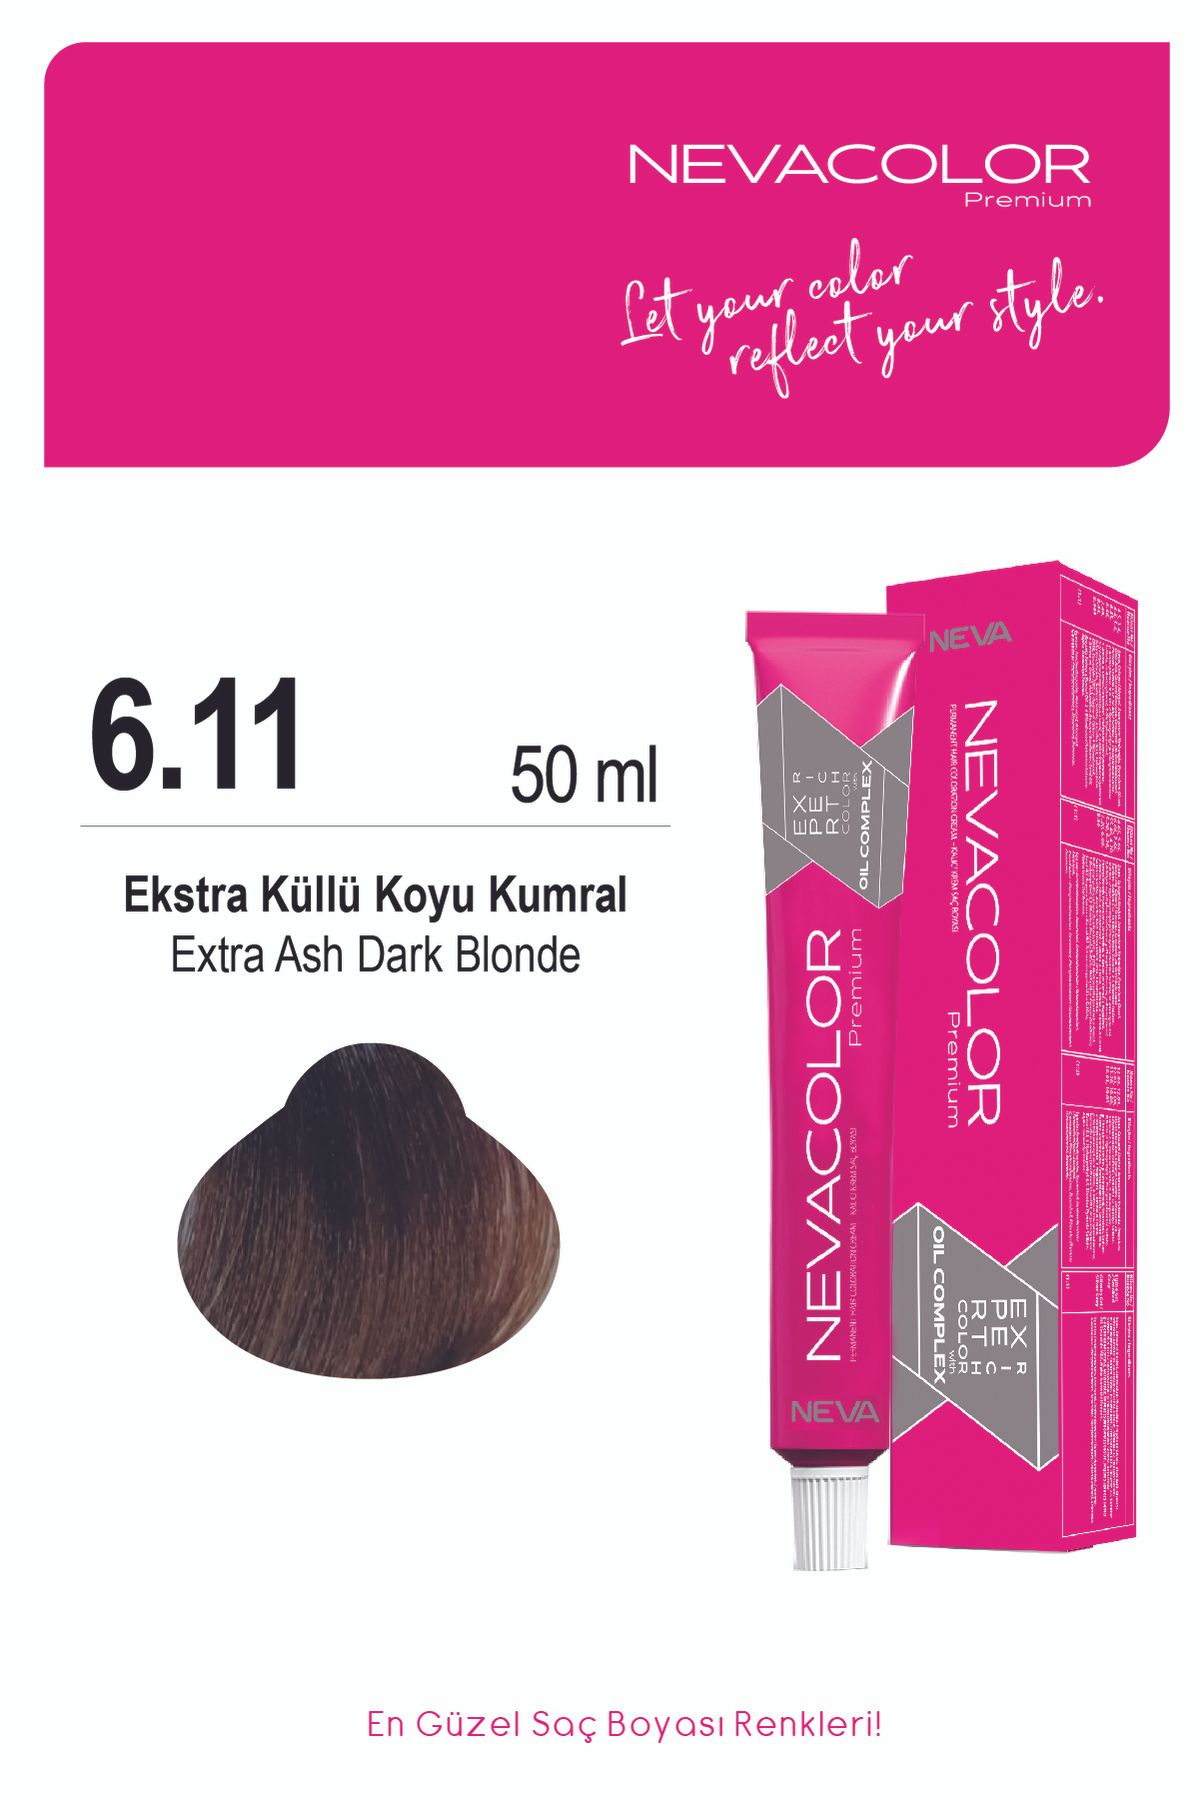 Nevacolor Premium 6.11 EKTRA KÜLLÜ KOYU KUMRAL Kalıcı Krem Saç Boyası 50ml